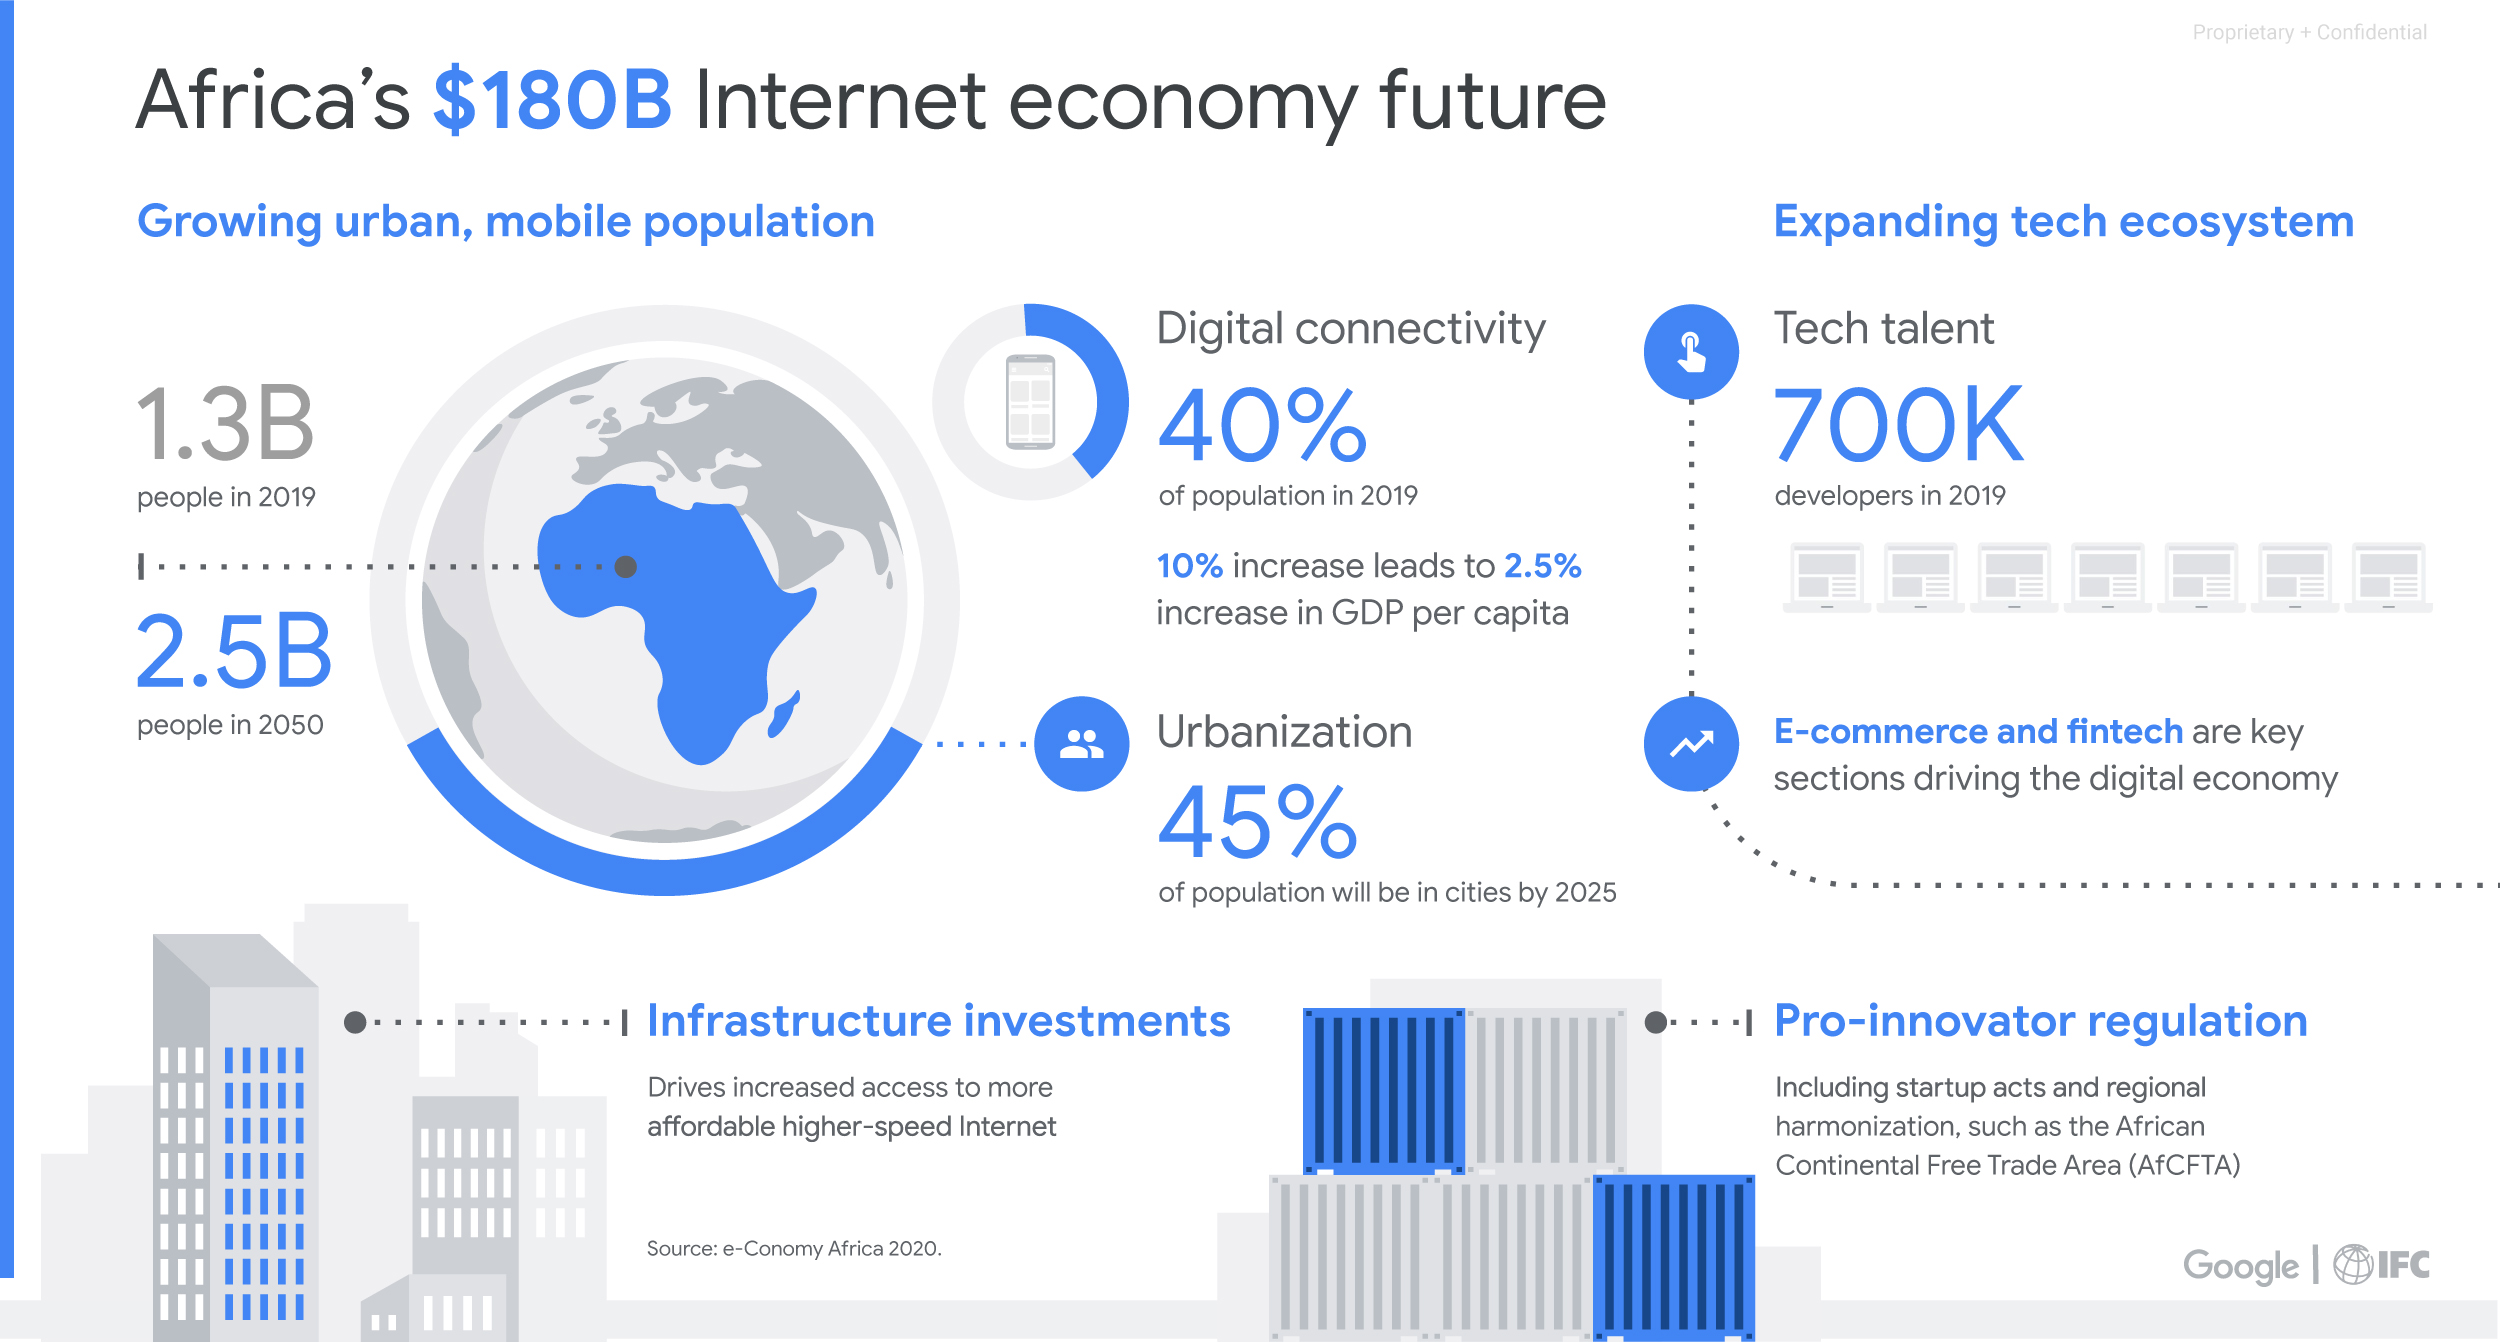 Africa's Internet Economy